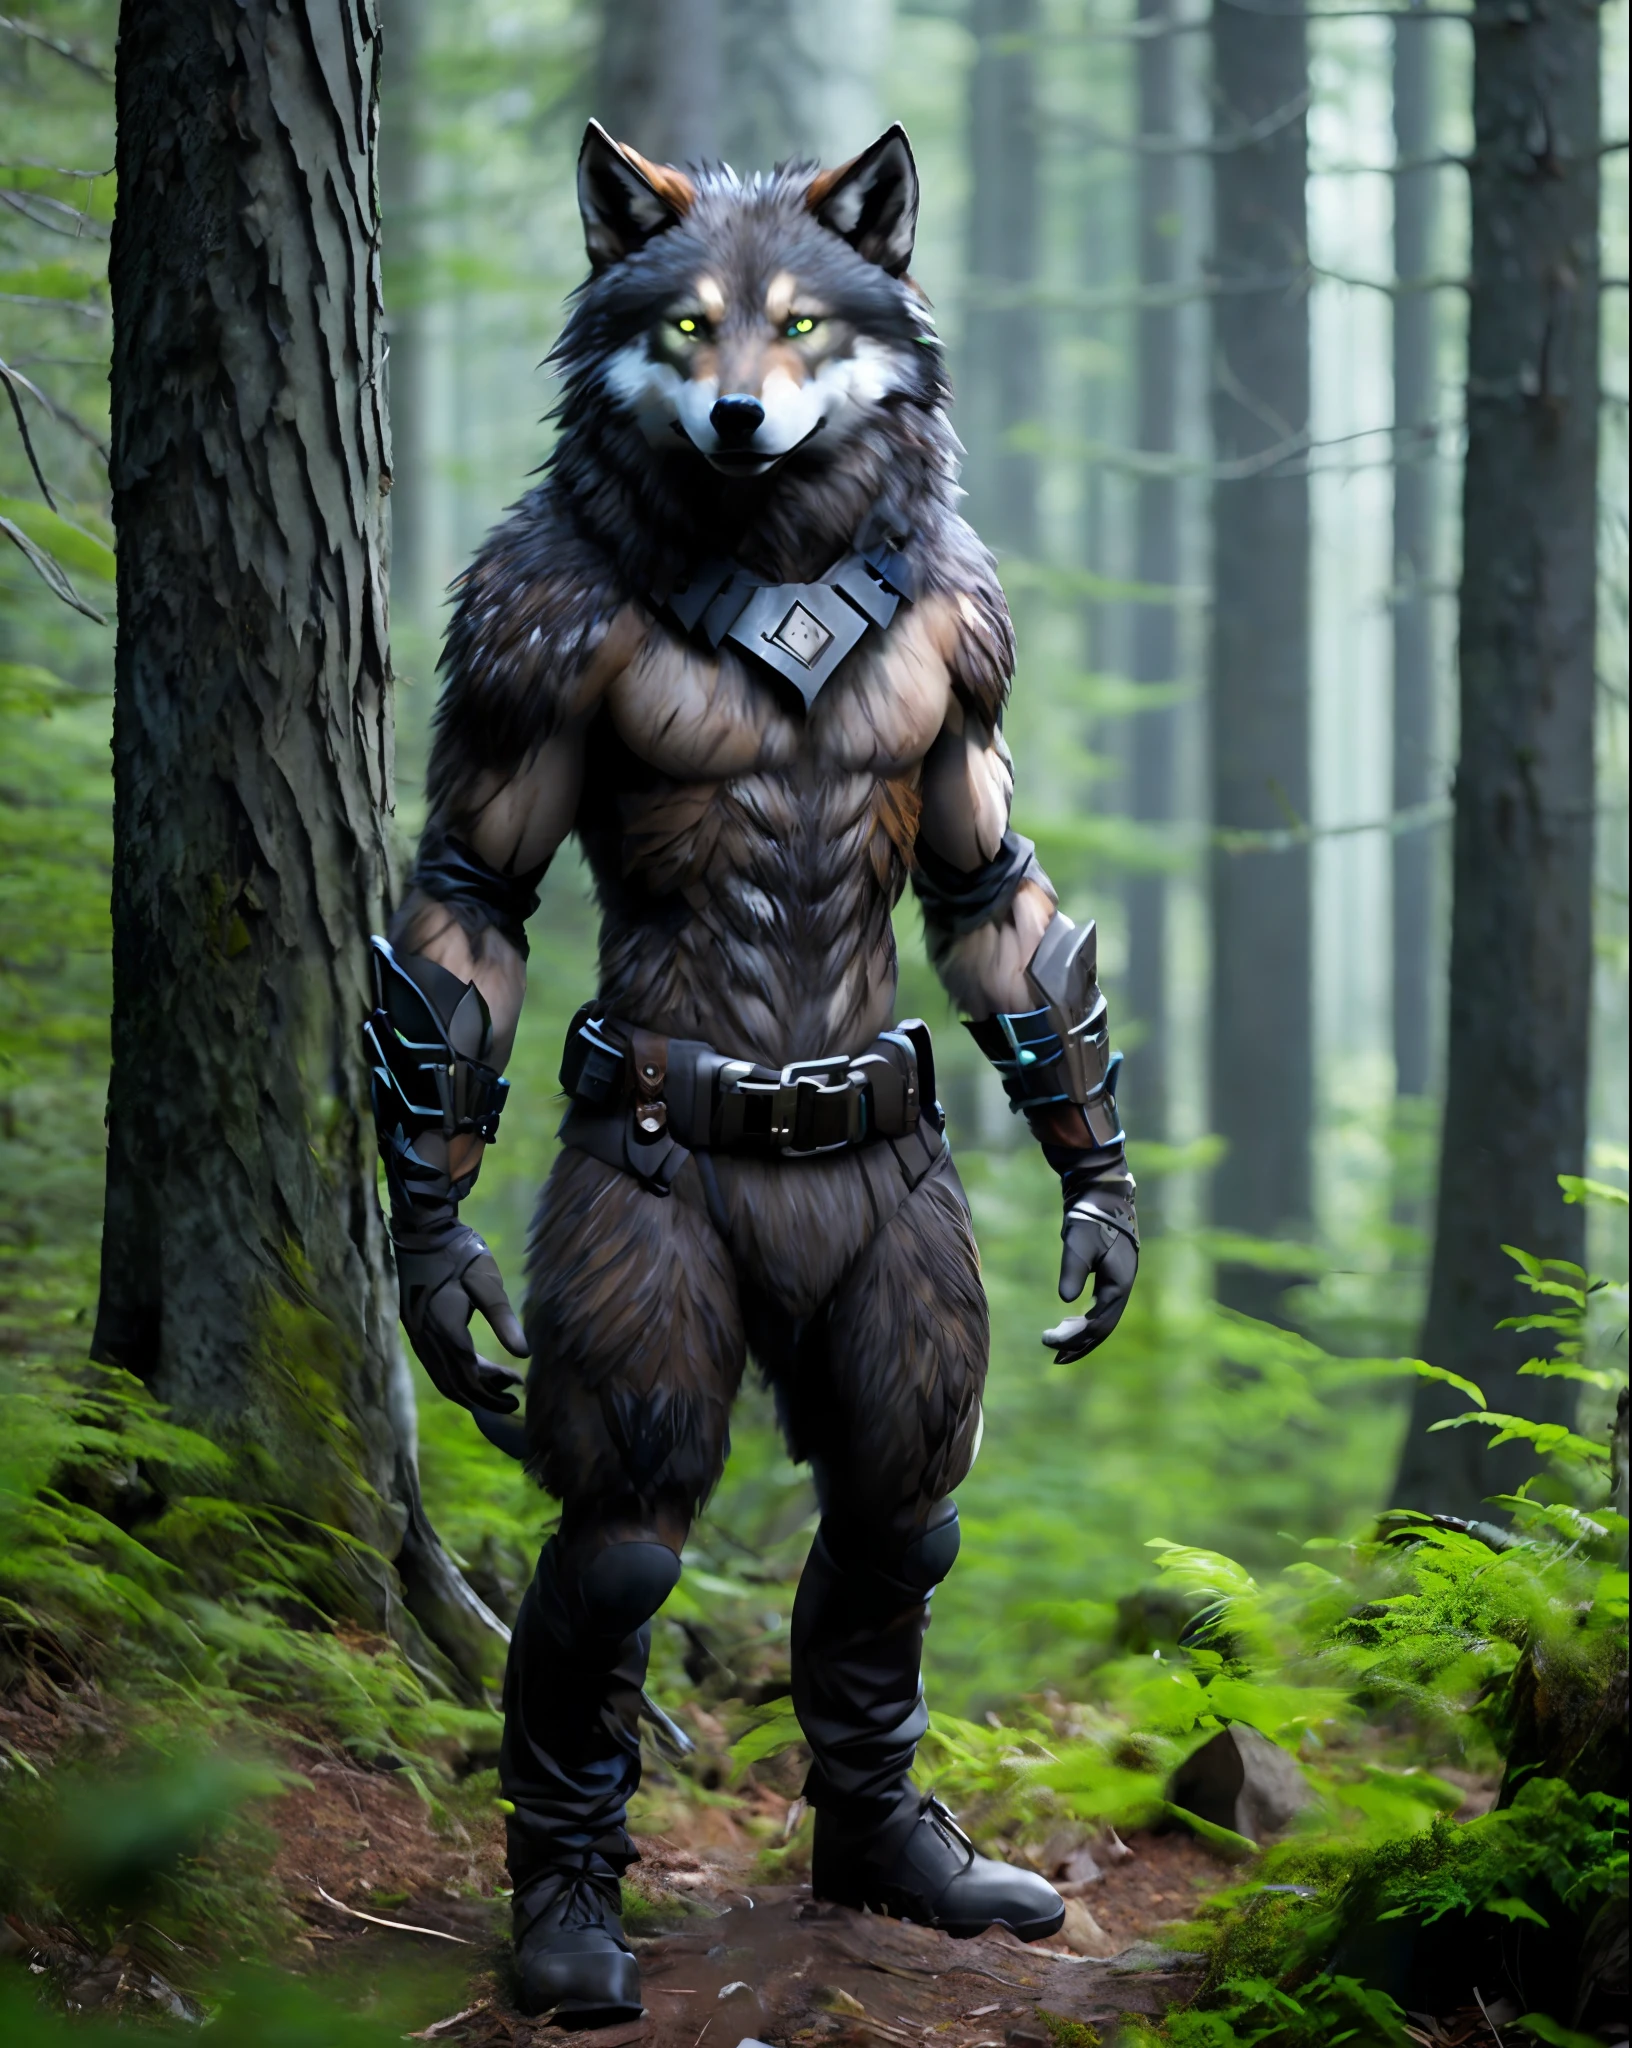 porra_ficção científica_v2, criatura humana, lobisomem lobo, cabeça grande, (olhos verdes), parado em uma floresta, correia de ferramentas, 80mm, f/1.8